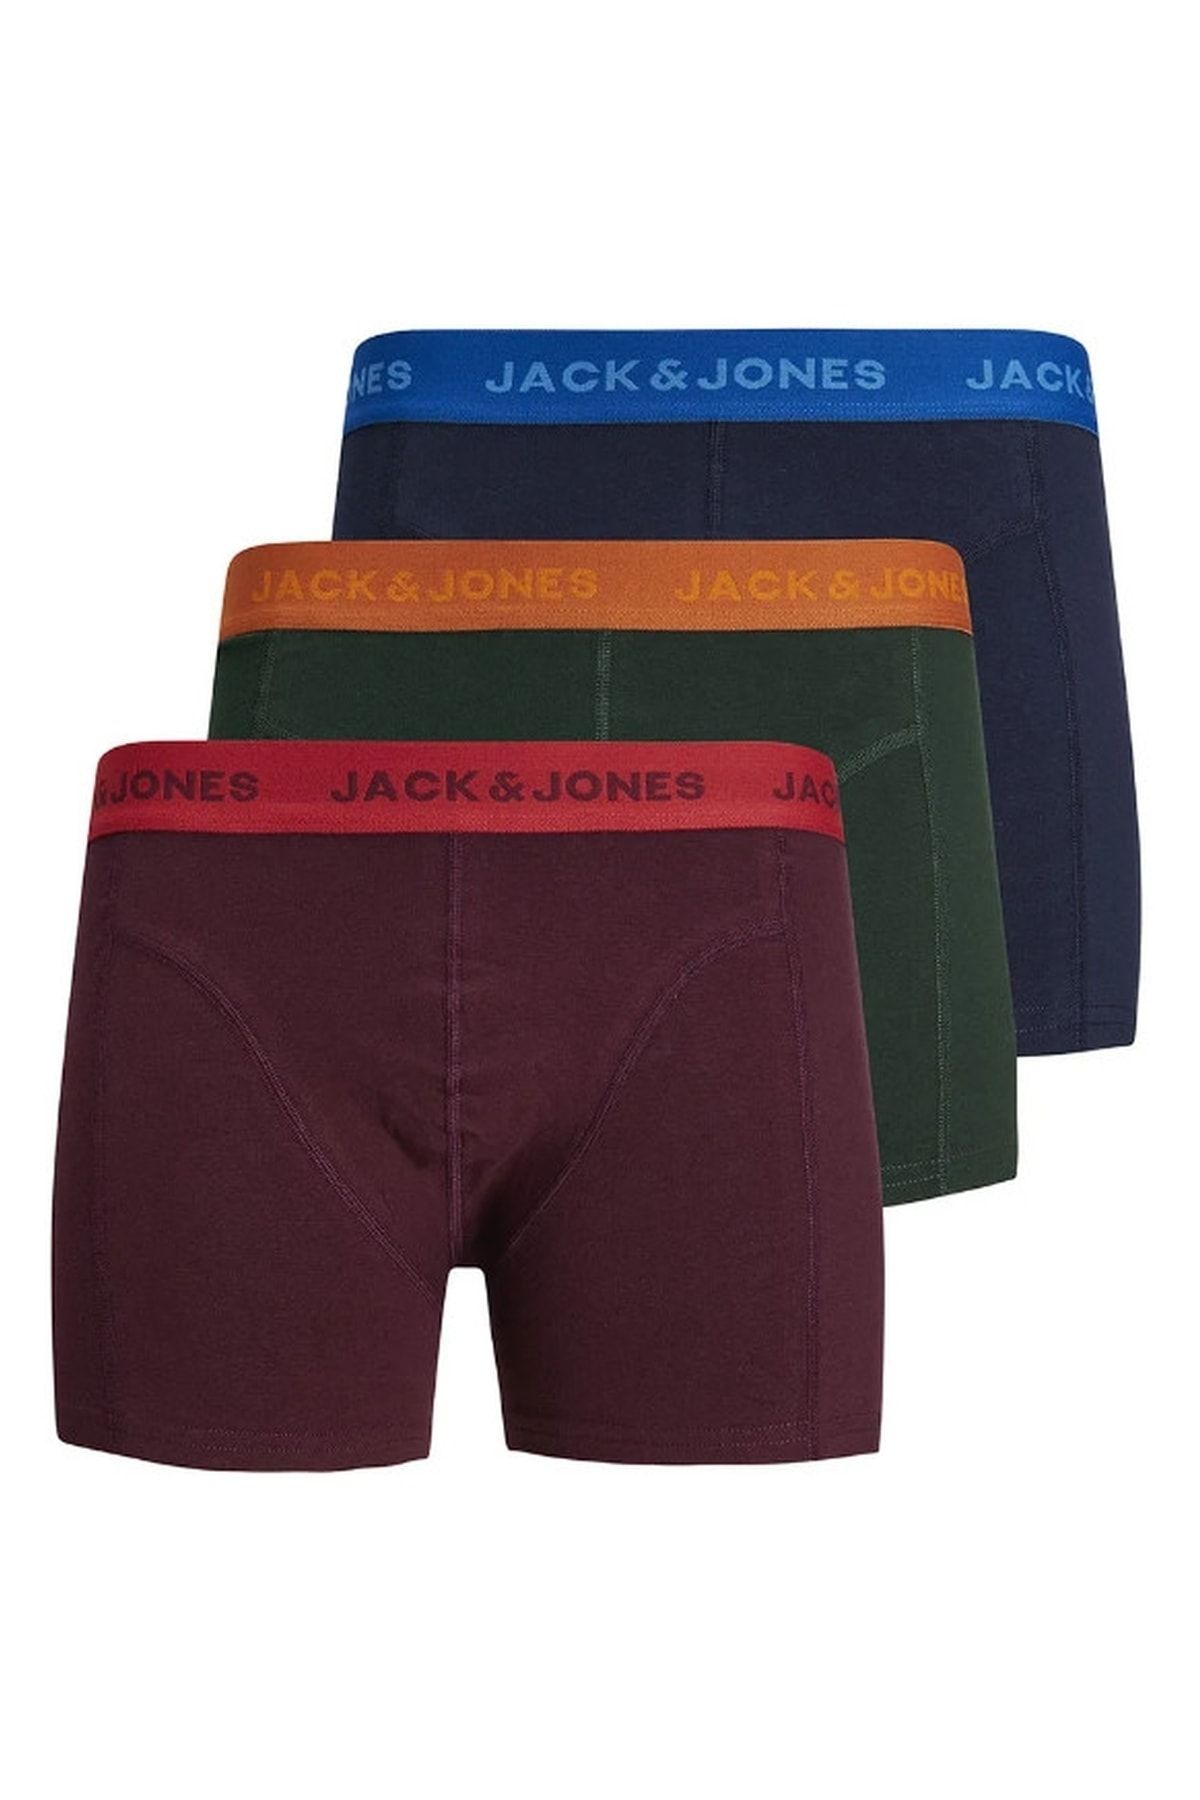 Jack & Jones Jacjett Trunks 3 Pack Erkek Boxer - 12211158 Pine Grove